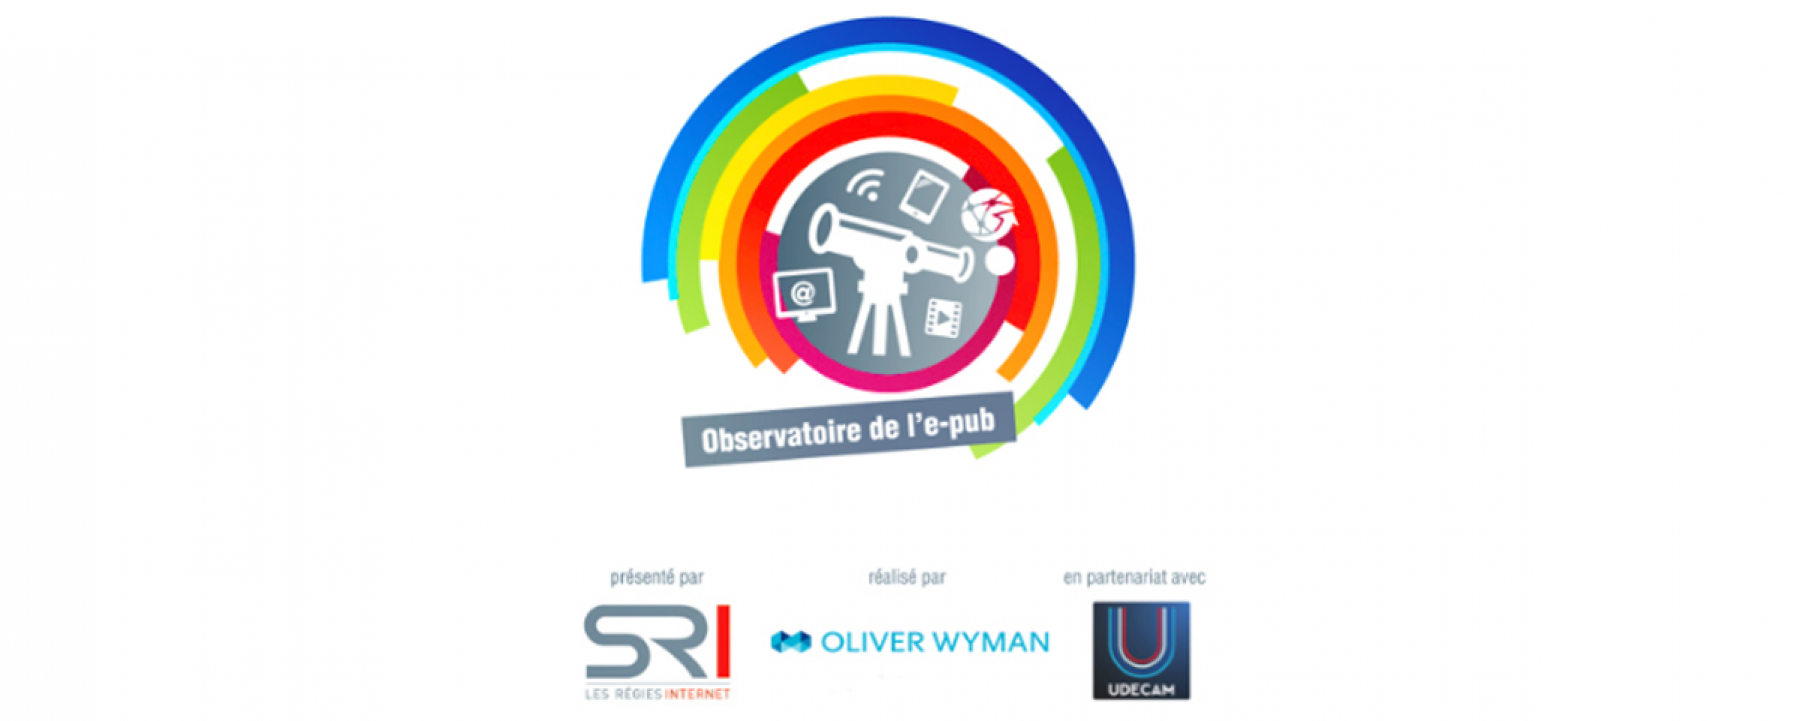 Bannière de la 22e édition de l'Observatoire de l'e-pub - SRI 